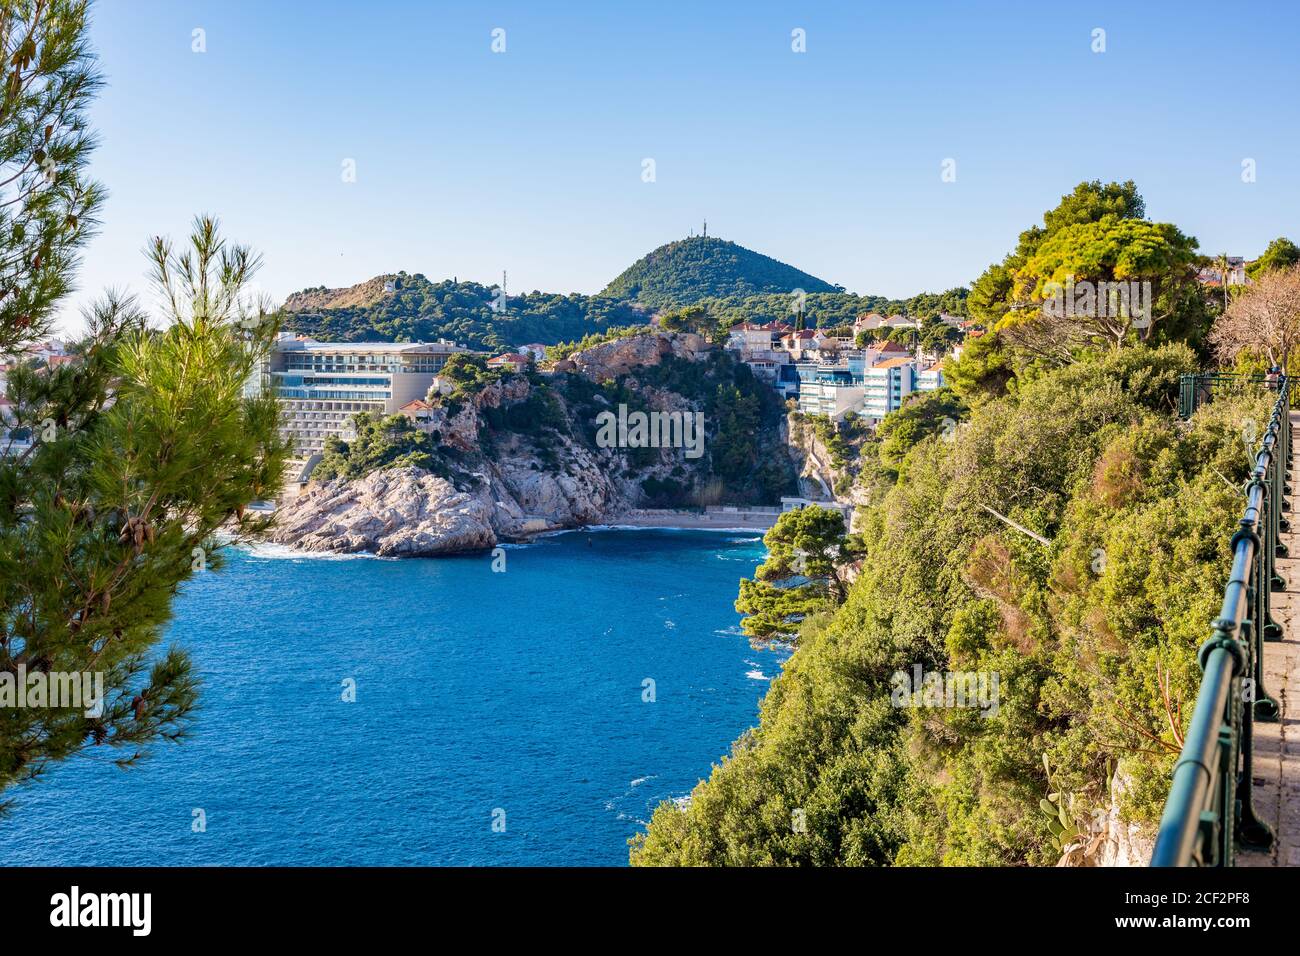 Vista mare Adriatico, Dubrovnik. Soleggiata vista invernale giorno, Croazia. Acqua di mare blu, cactus e altri alberi e cespugli sulla riva alta. Fotografia di viaggio. Foto Stock